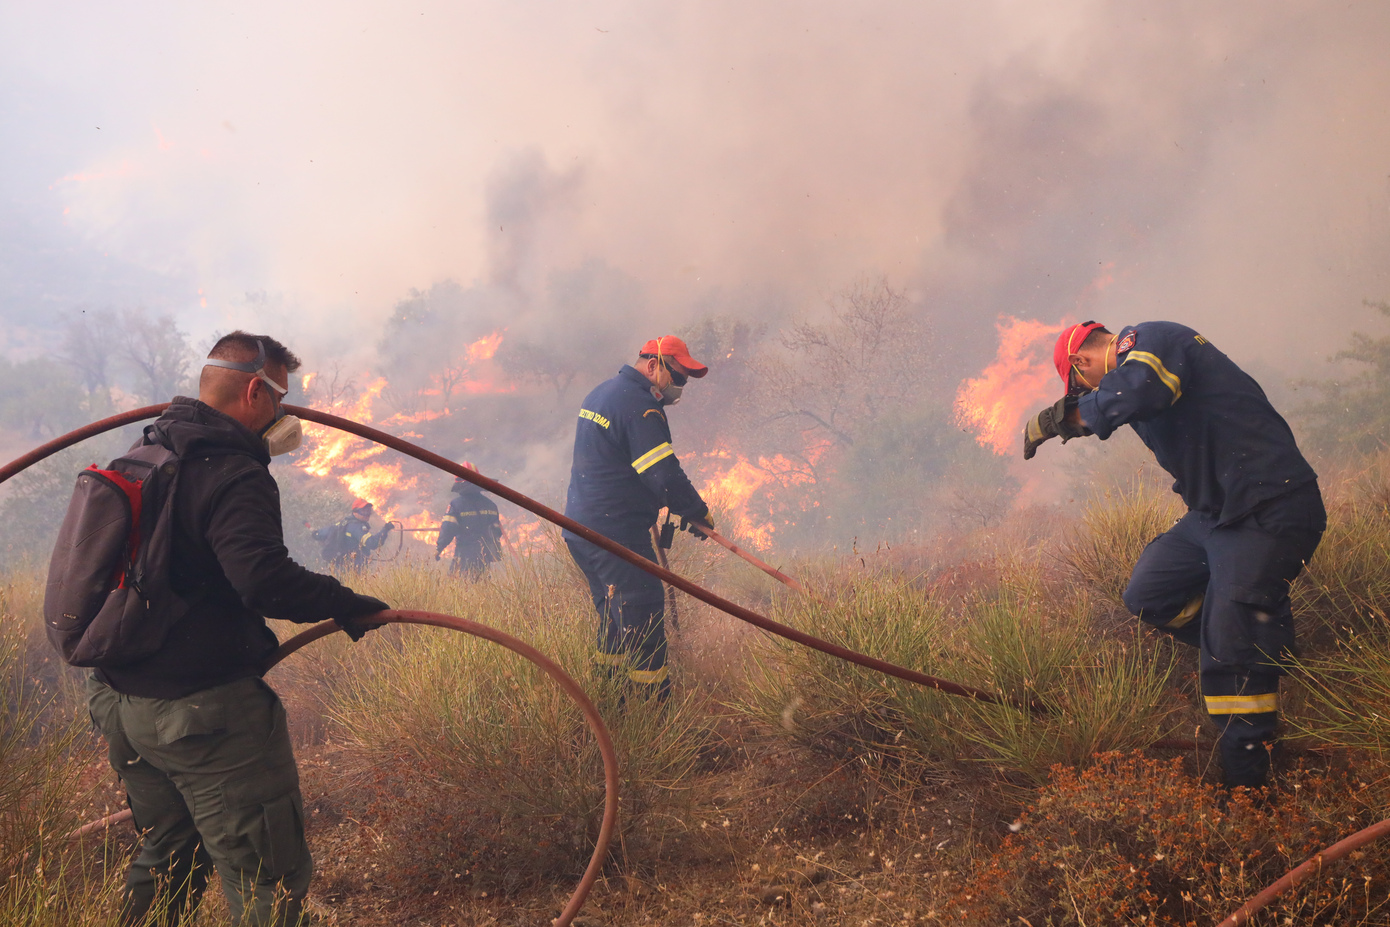 Προειδοποίηση από τον πυρομετεωρολόγο Γιάνναρο &#8211; «Μέγιστη προσοχή για αποφυγή έναρξης πυρκαγιάς &#8211; Έρχεται πολύ θερμό καλοκαίρι»